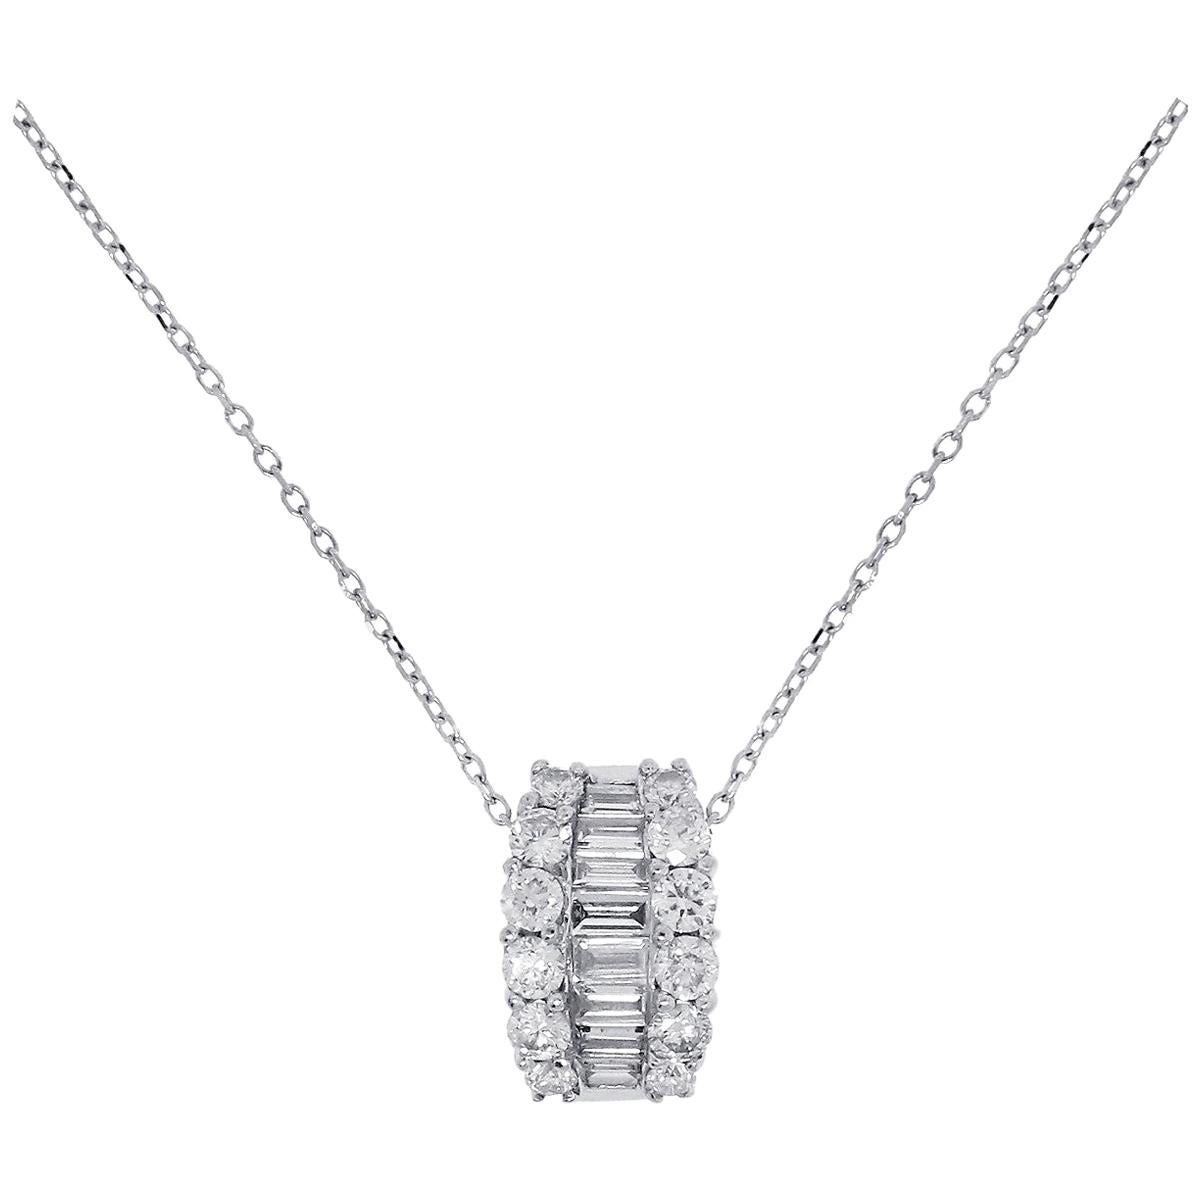 0.74 Carat Diamond Necklace